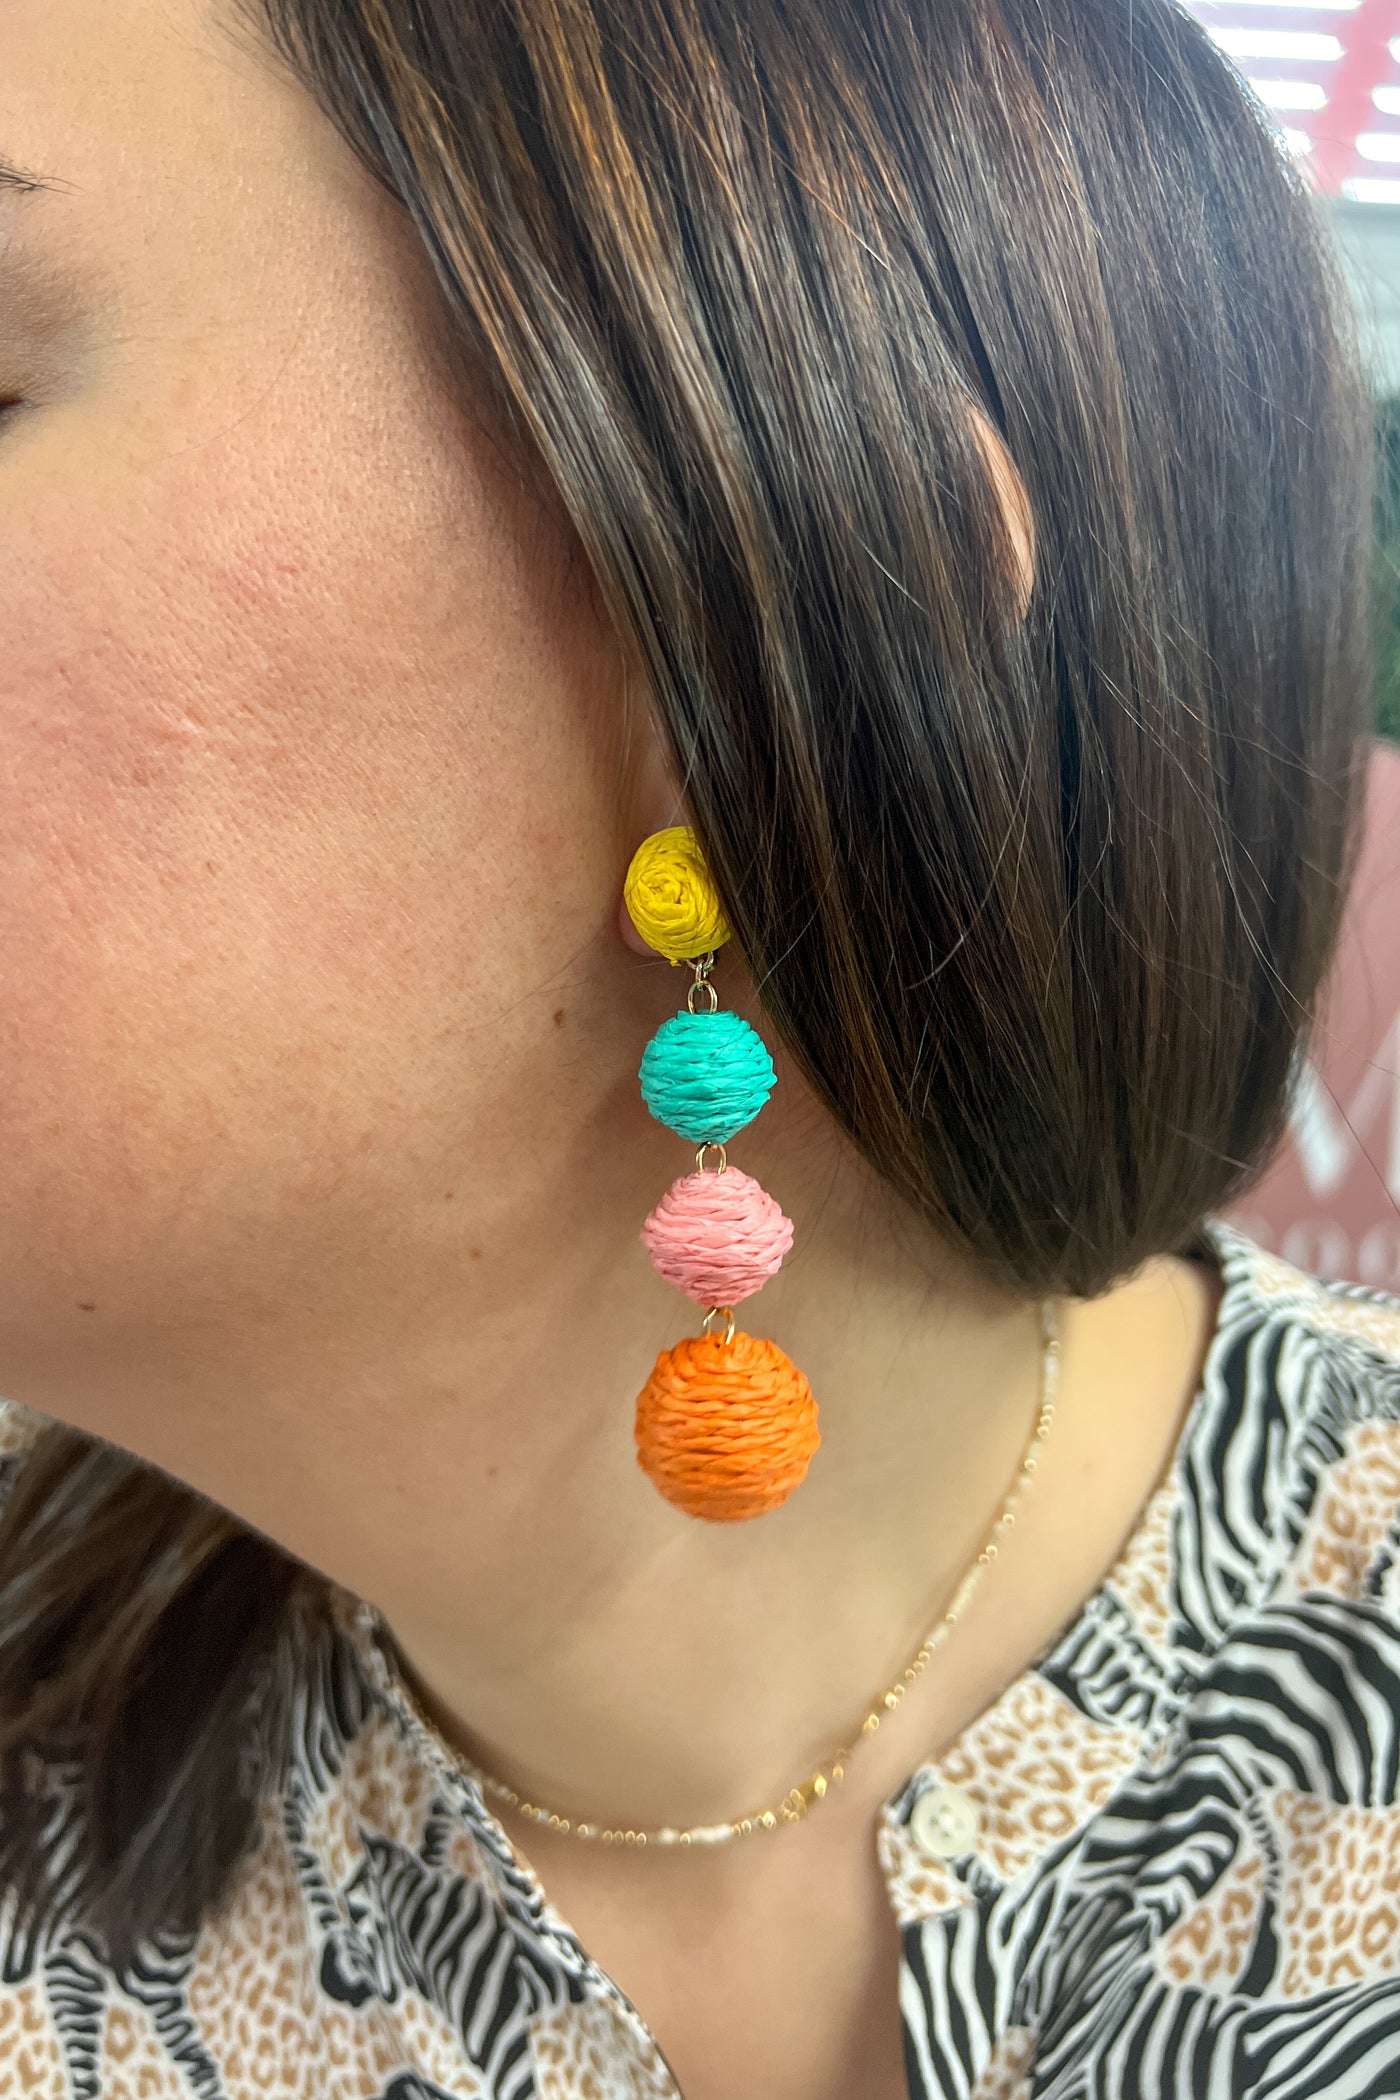 Raffia ball earrings, neon